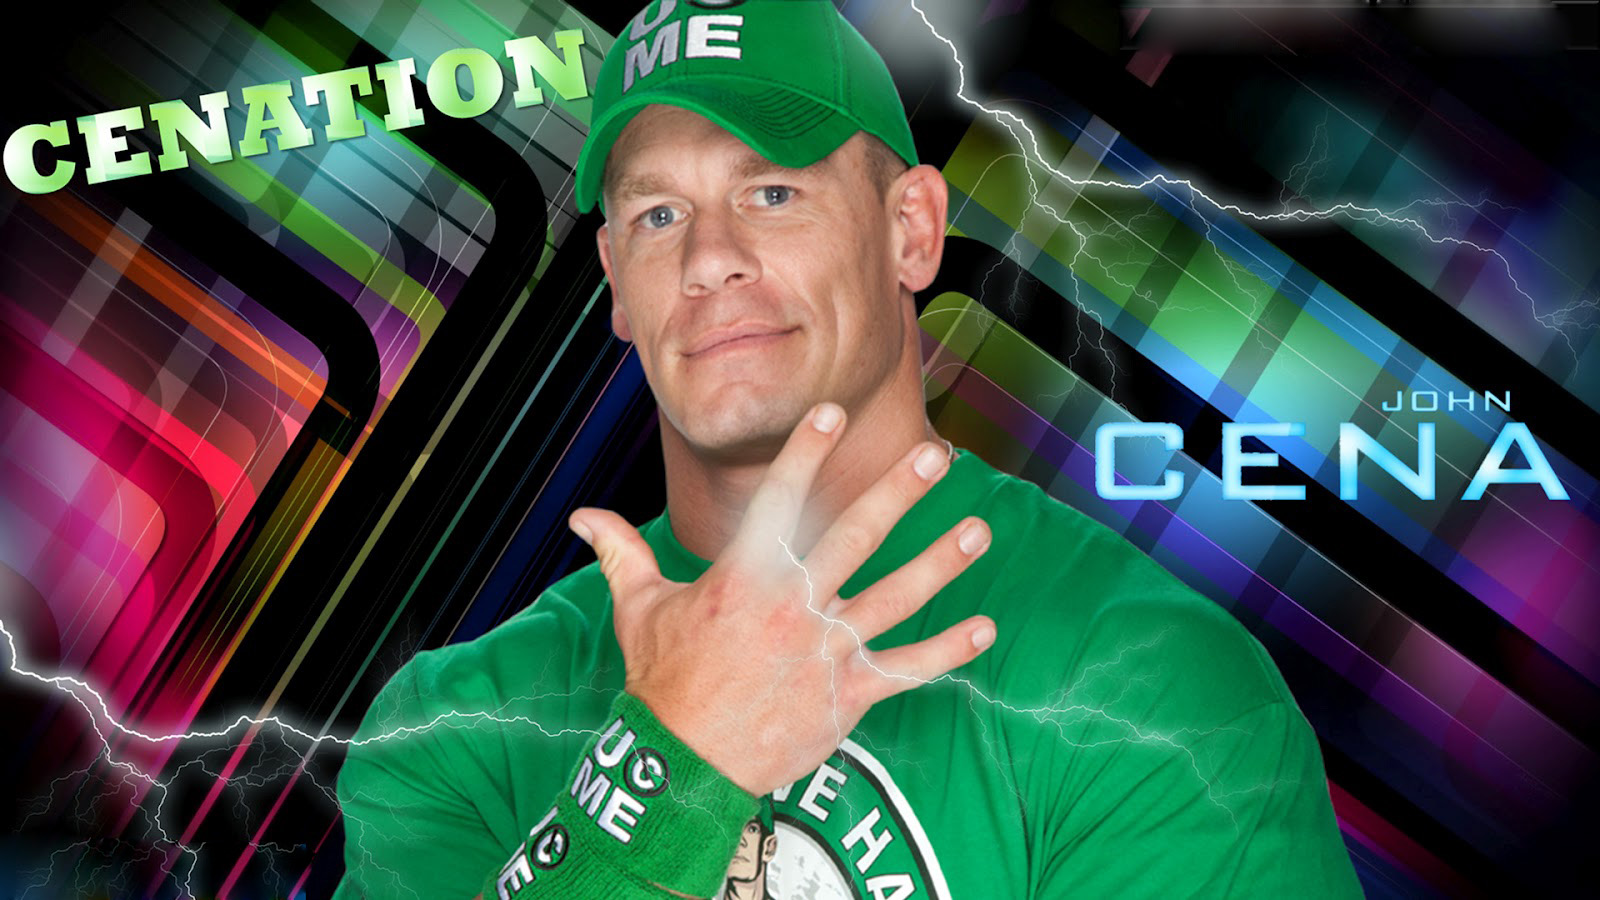 John Cena New Hd Wallpapers - WallpaperSafari